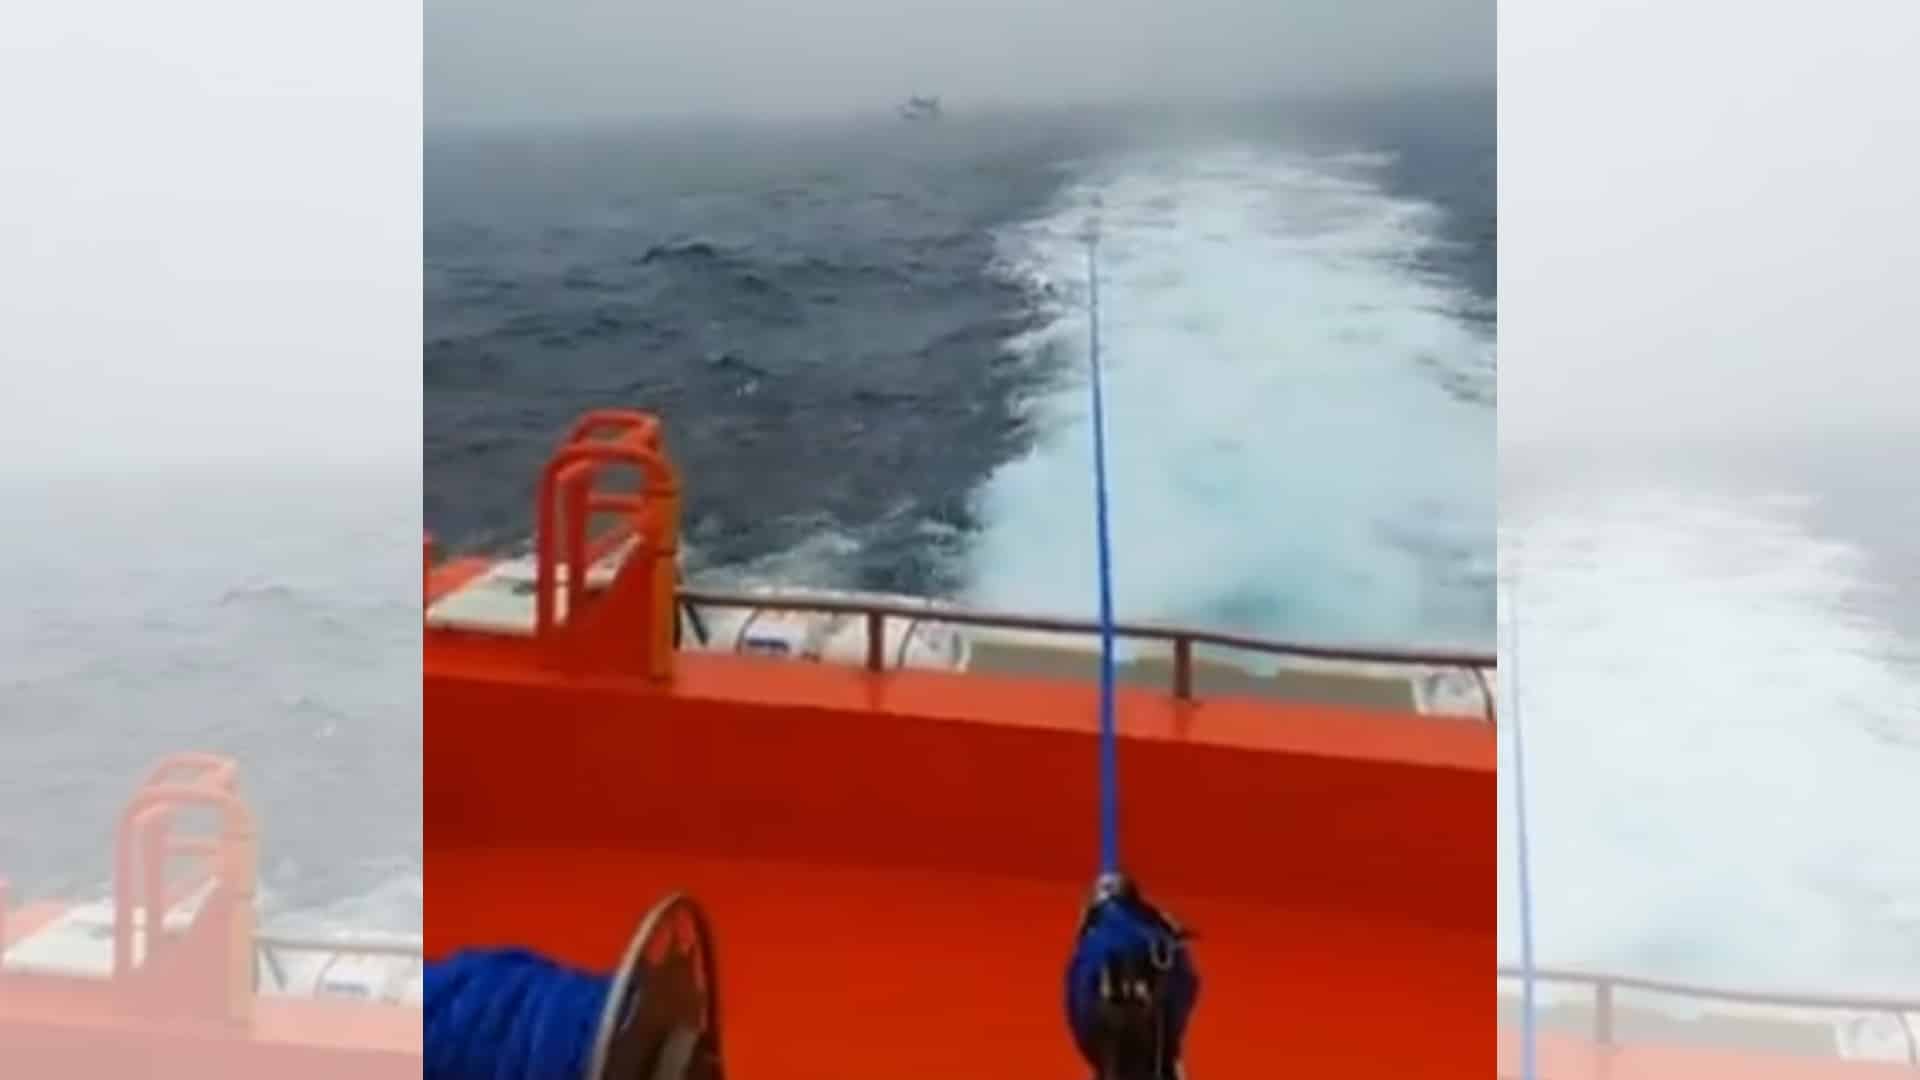 El Salvamar Betelheuse remolca al velero Triola tras una interacción con orcas | @SALVAMENTOGOB